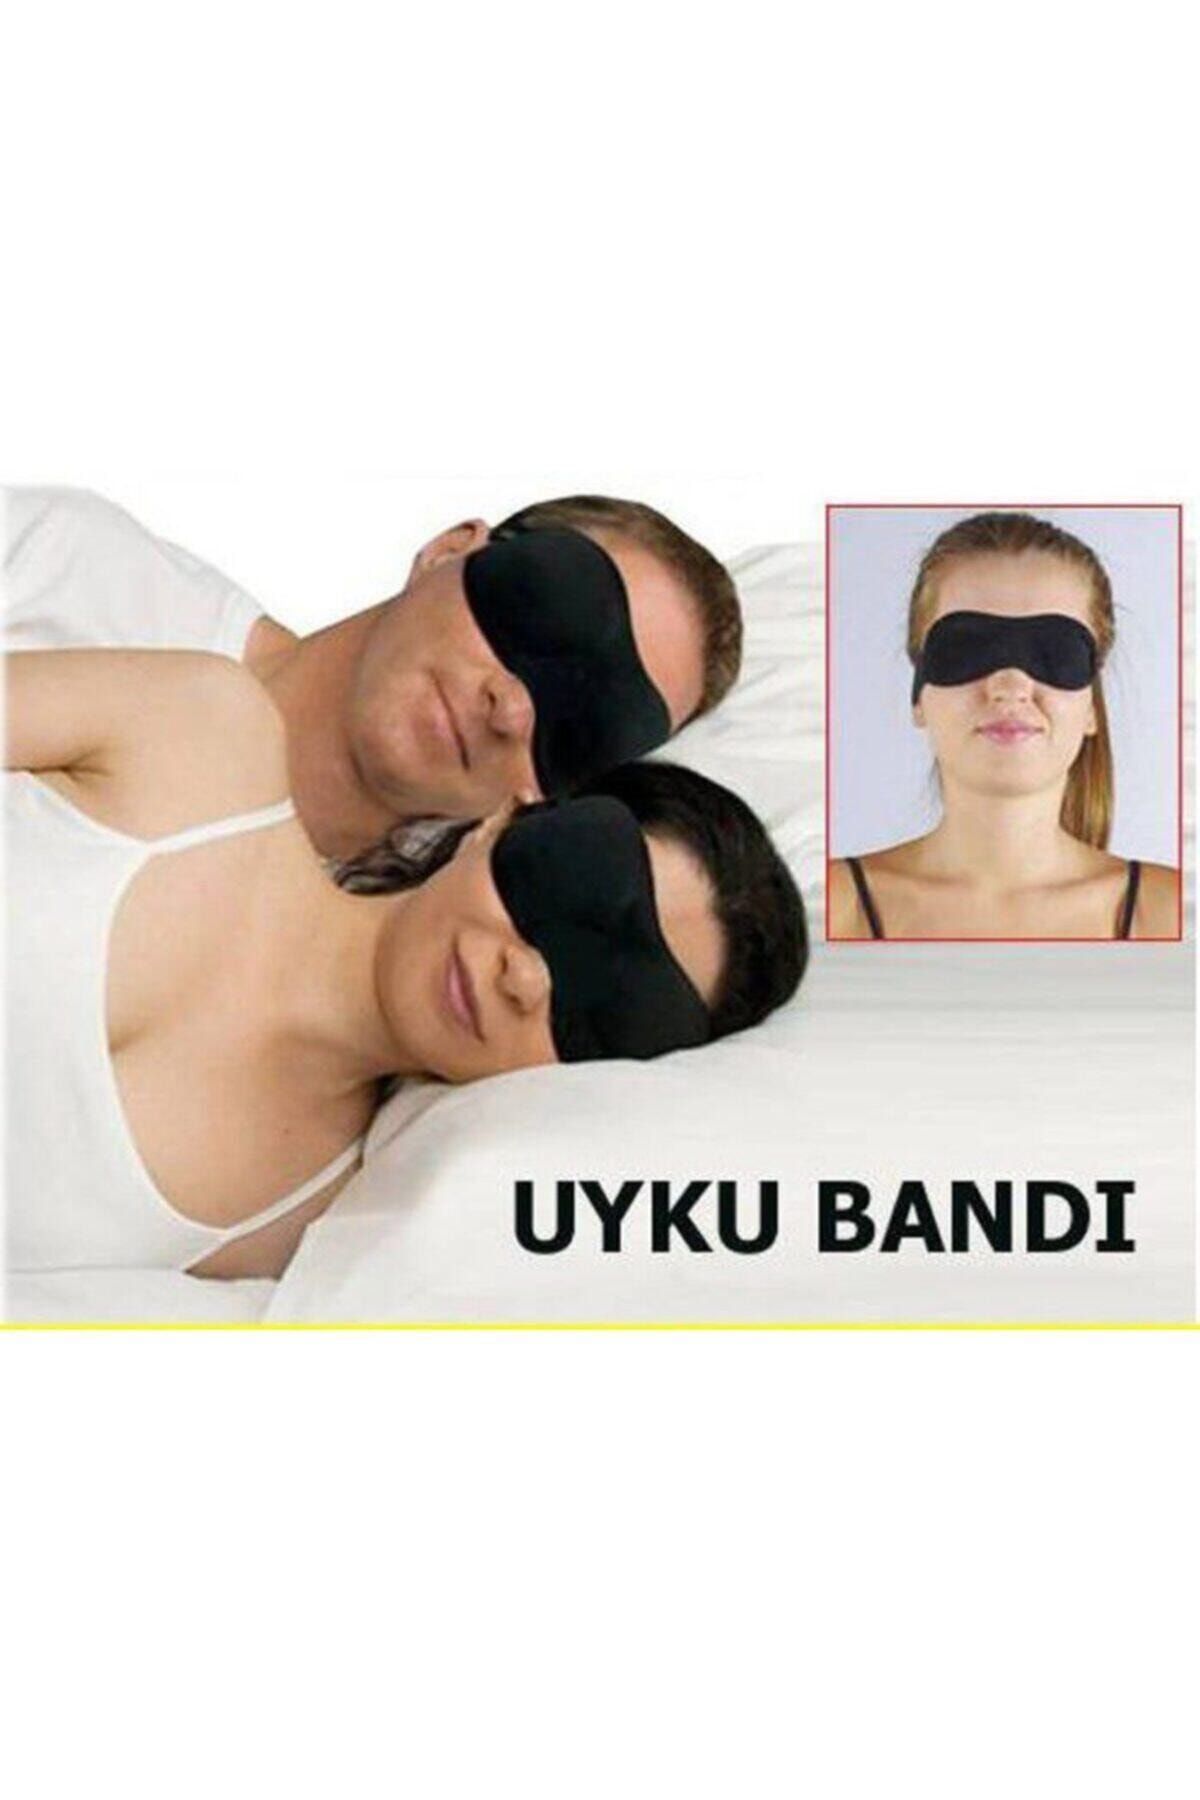 CMT Uyku Göz Bandı Seyahat Göz Yüz Maskesi Işık Önleyici Engelleyici Bant Maske Bay Bayan Unisex Gözlük